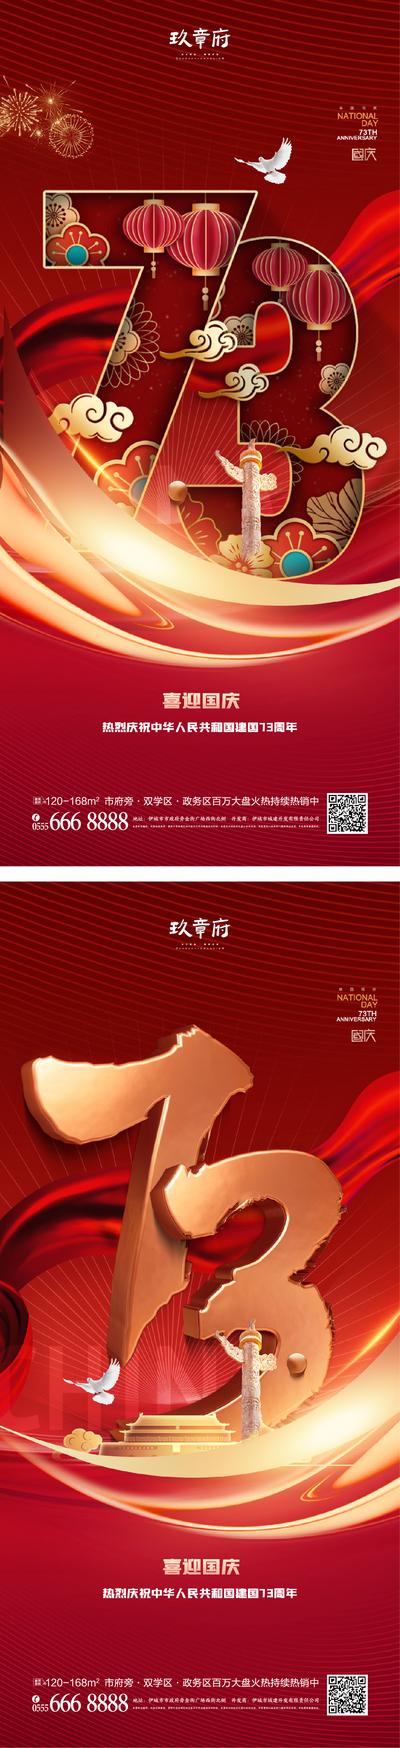 南门网 广告 海报 节日 国庆 73周年 数字 系列 立体 创意